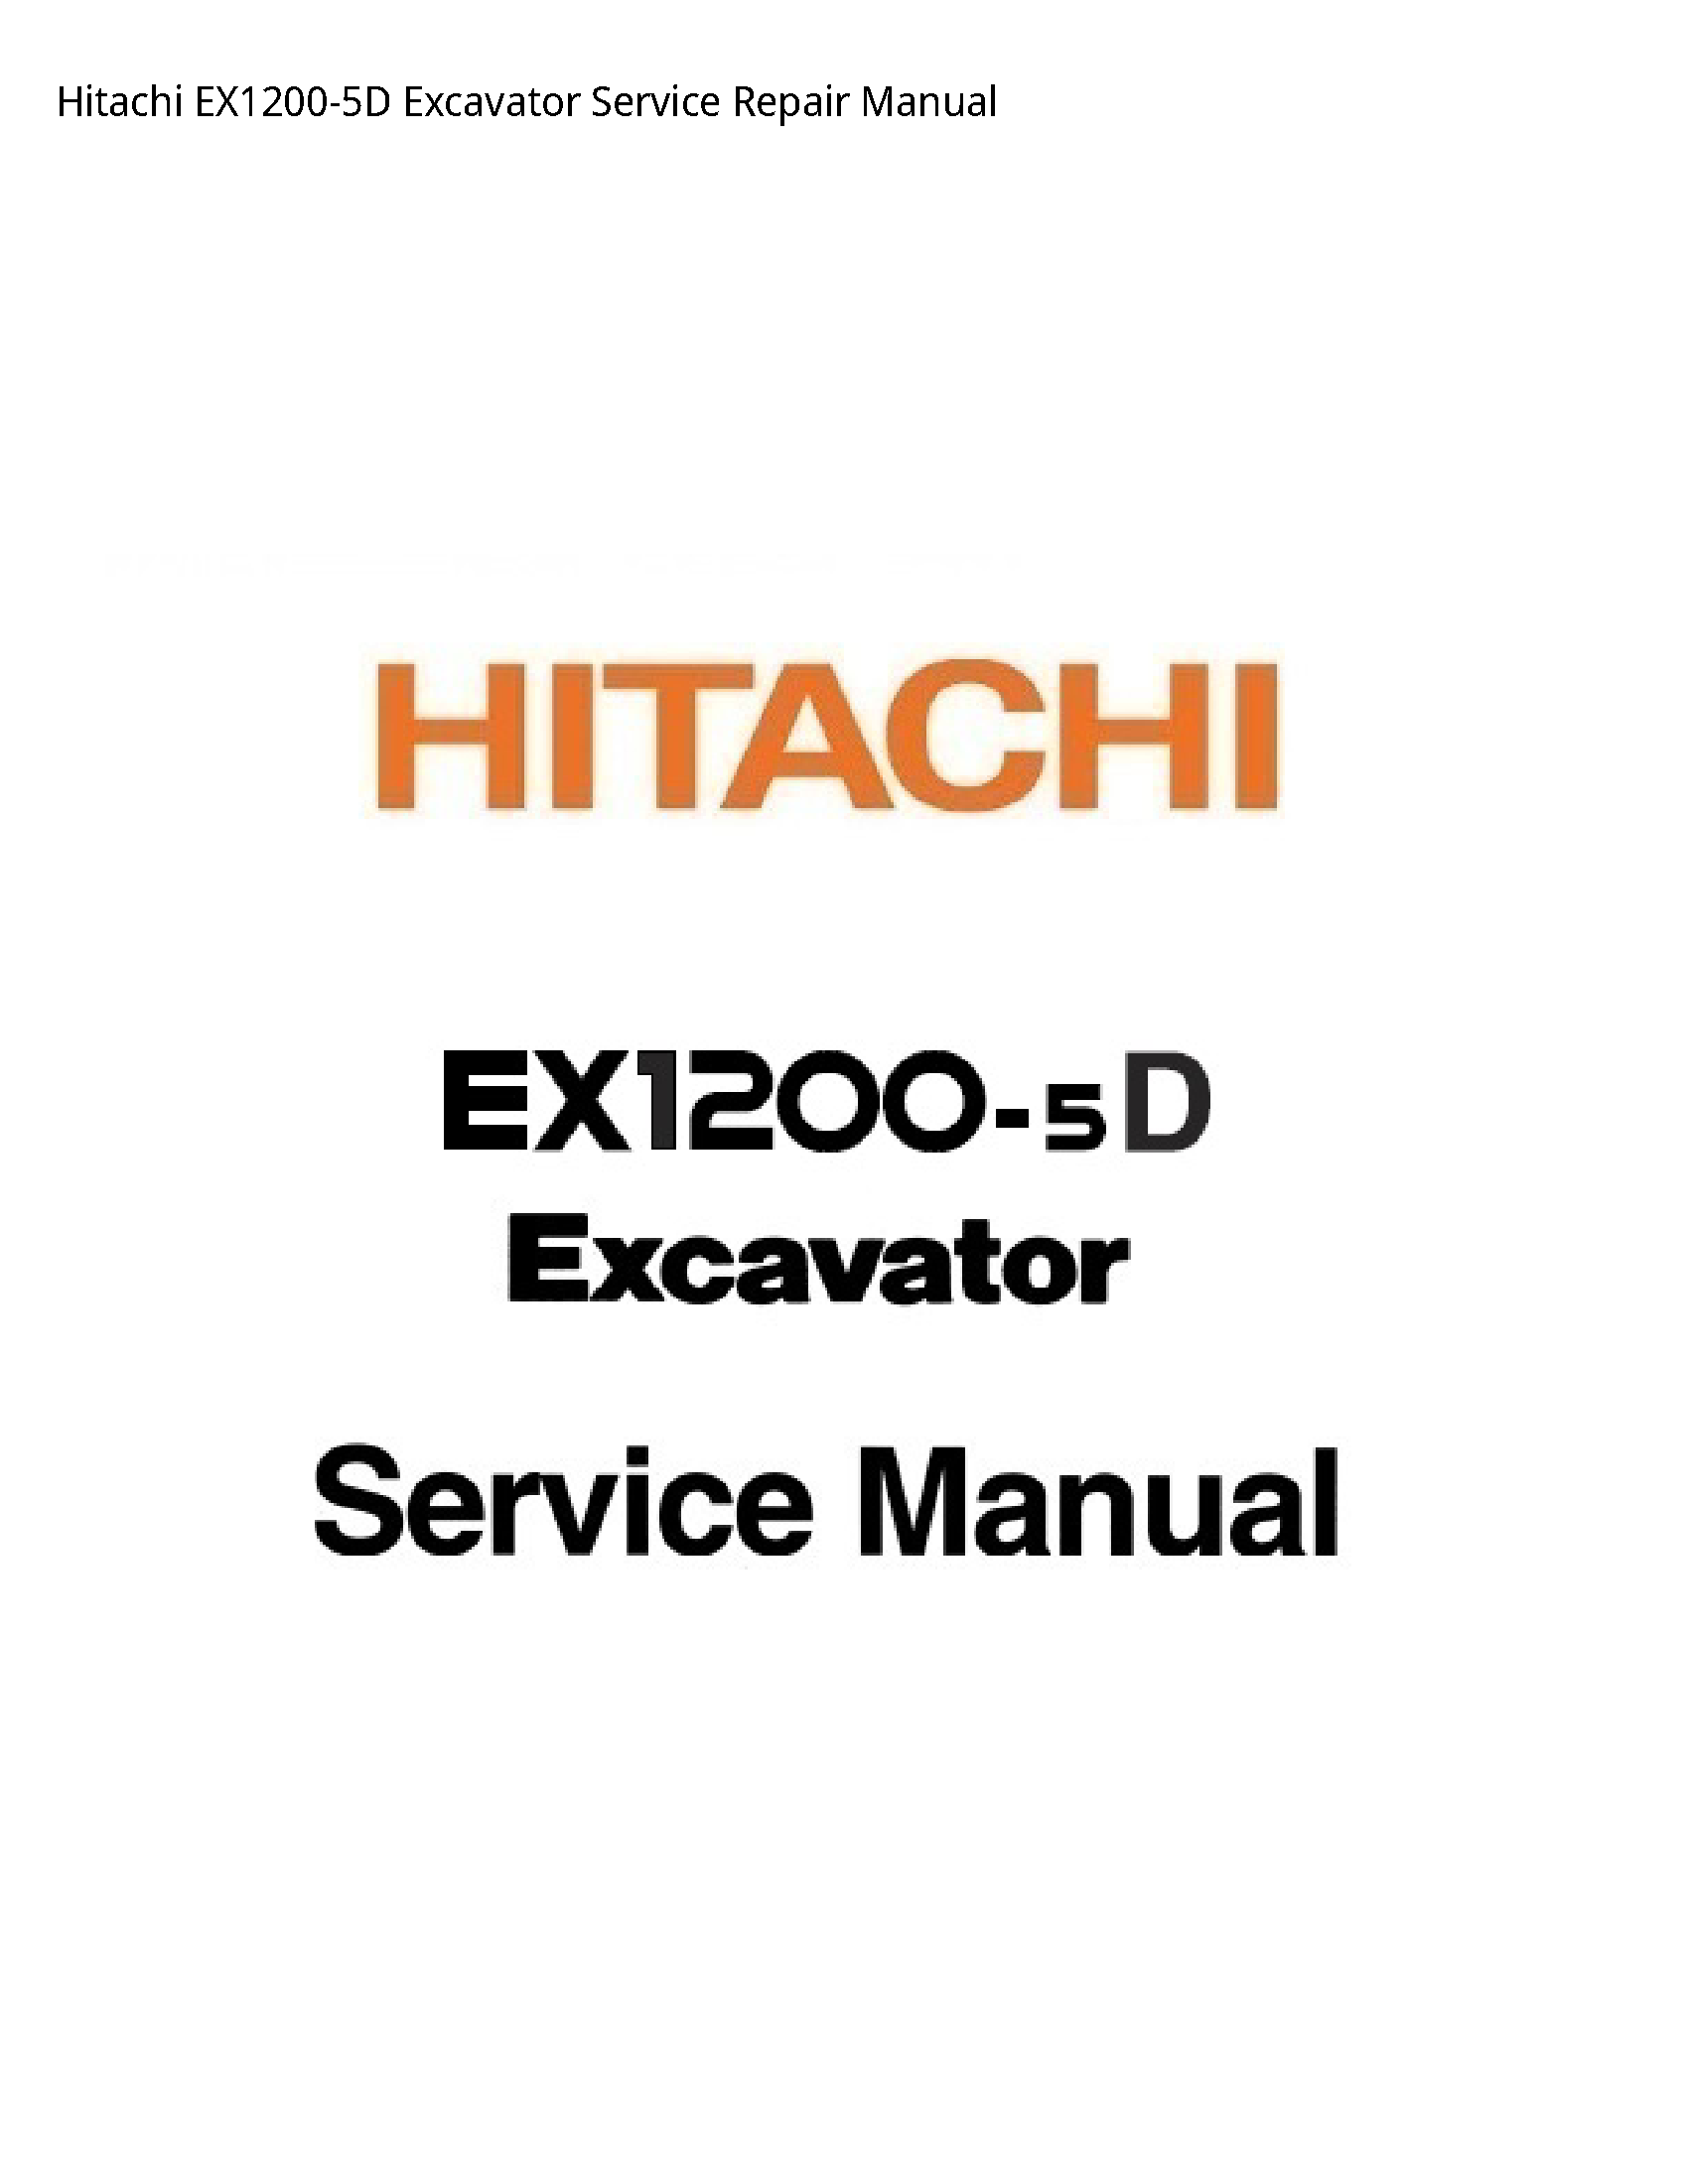 Hitachi EX1200-5D Excavator manual